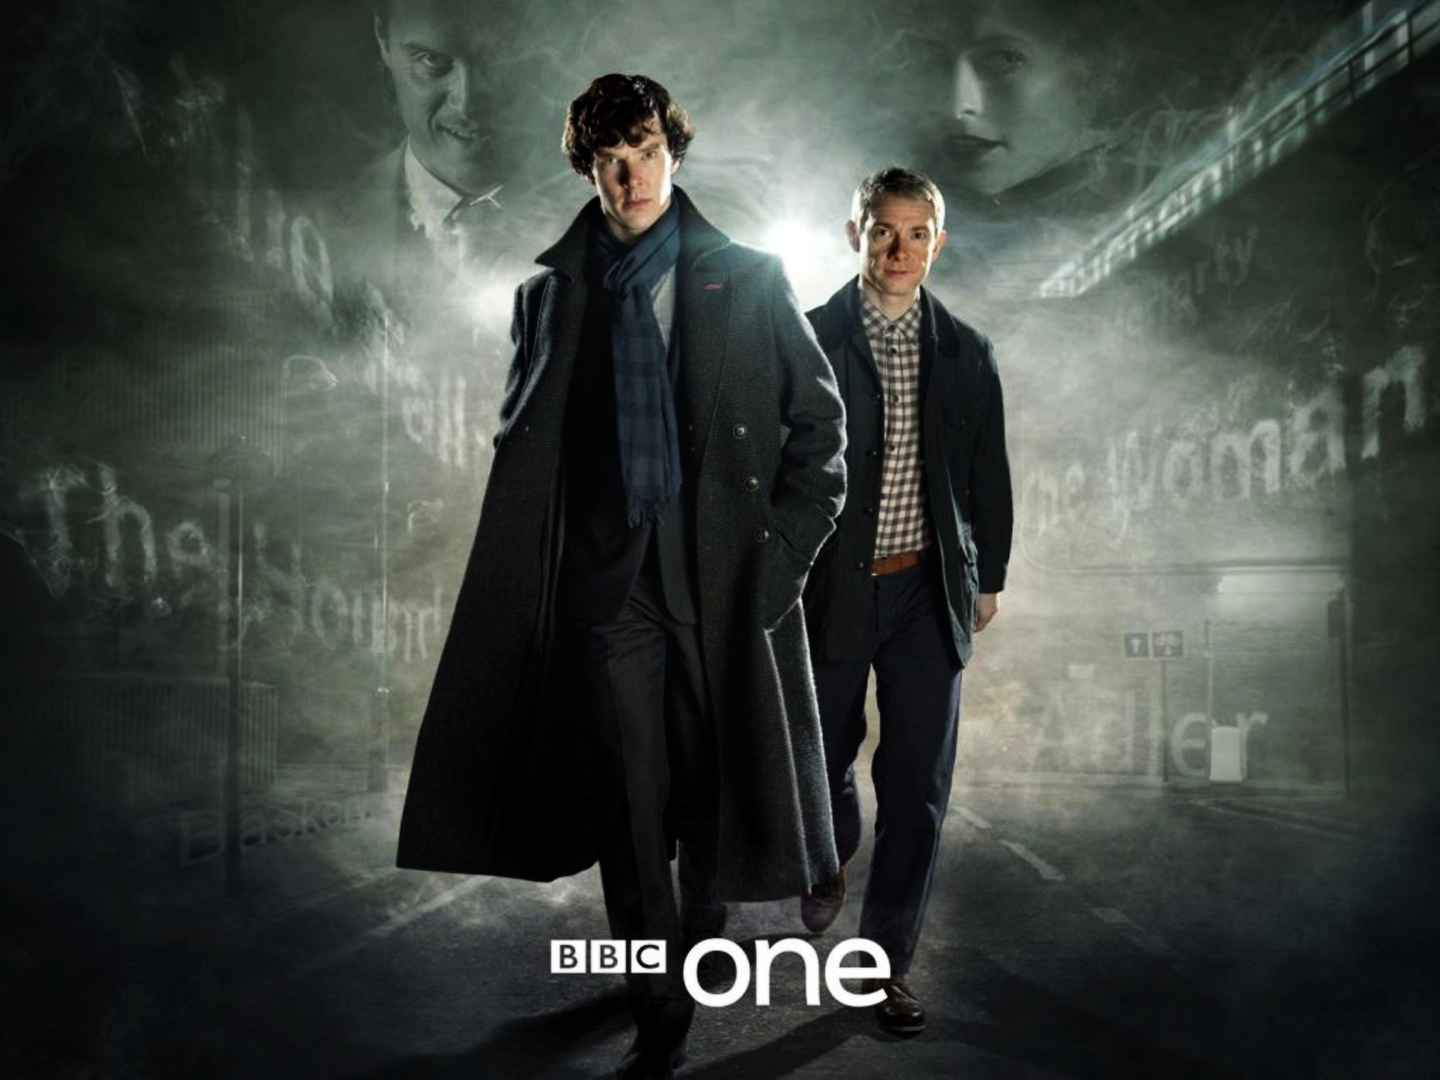 Sherlock Holmes & John Watson | Television, Movies and Actors I LOVE